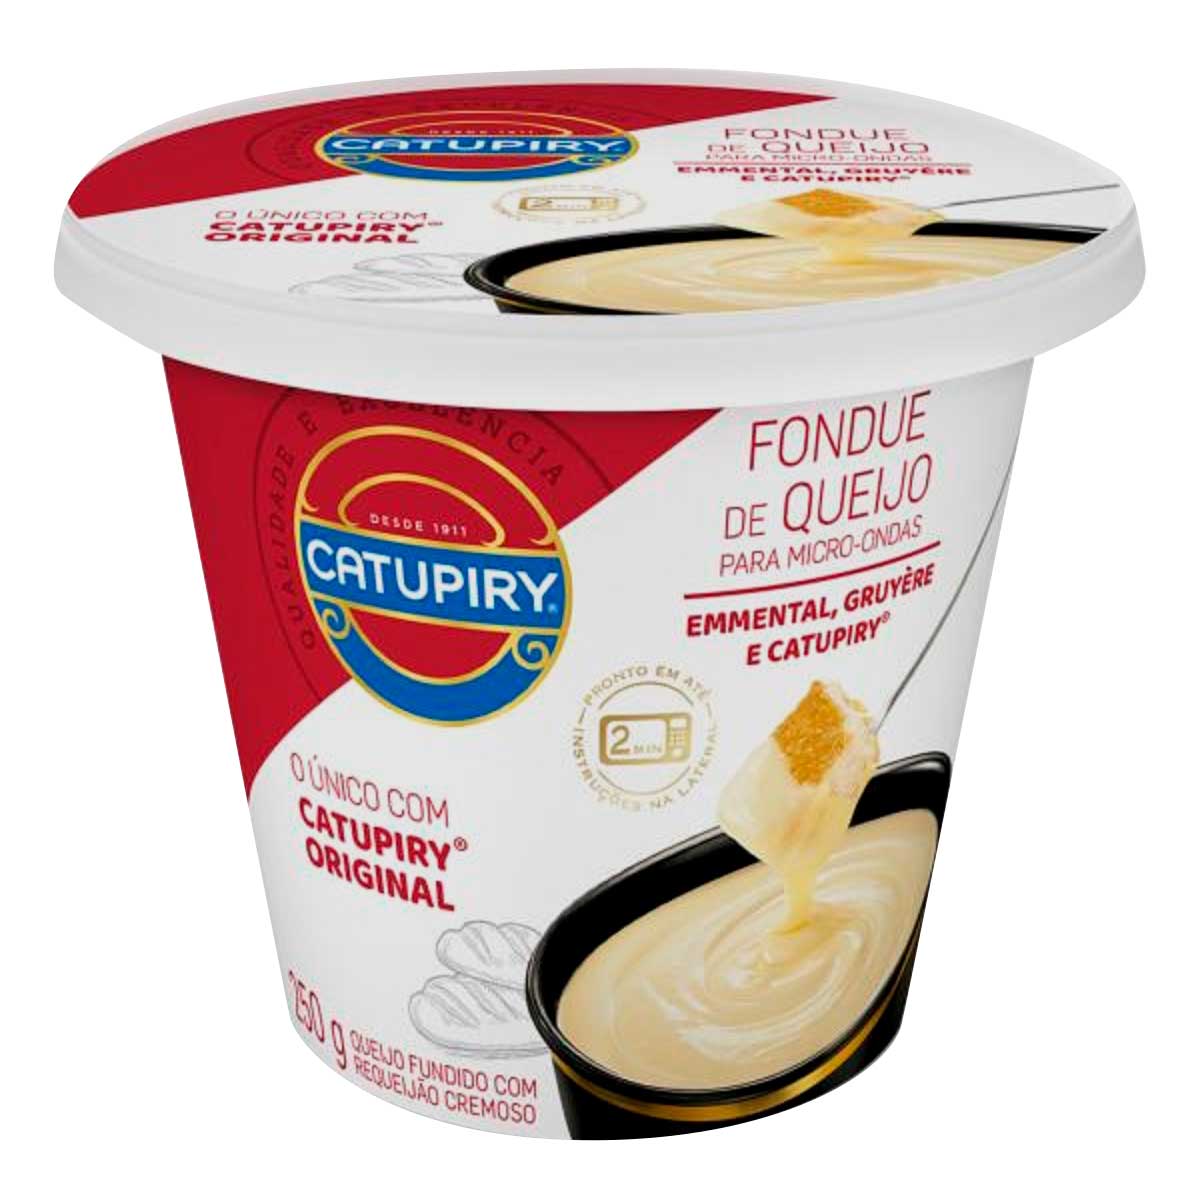 fondue-de-queijo-para-microondas-catupiry-250g-1.jpg